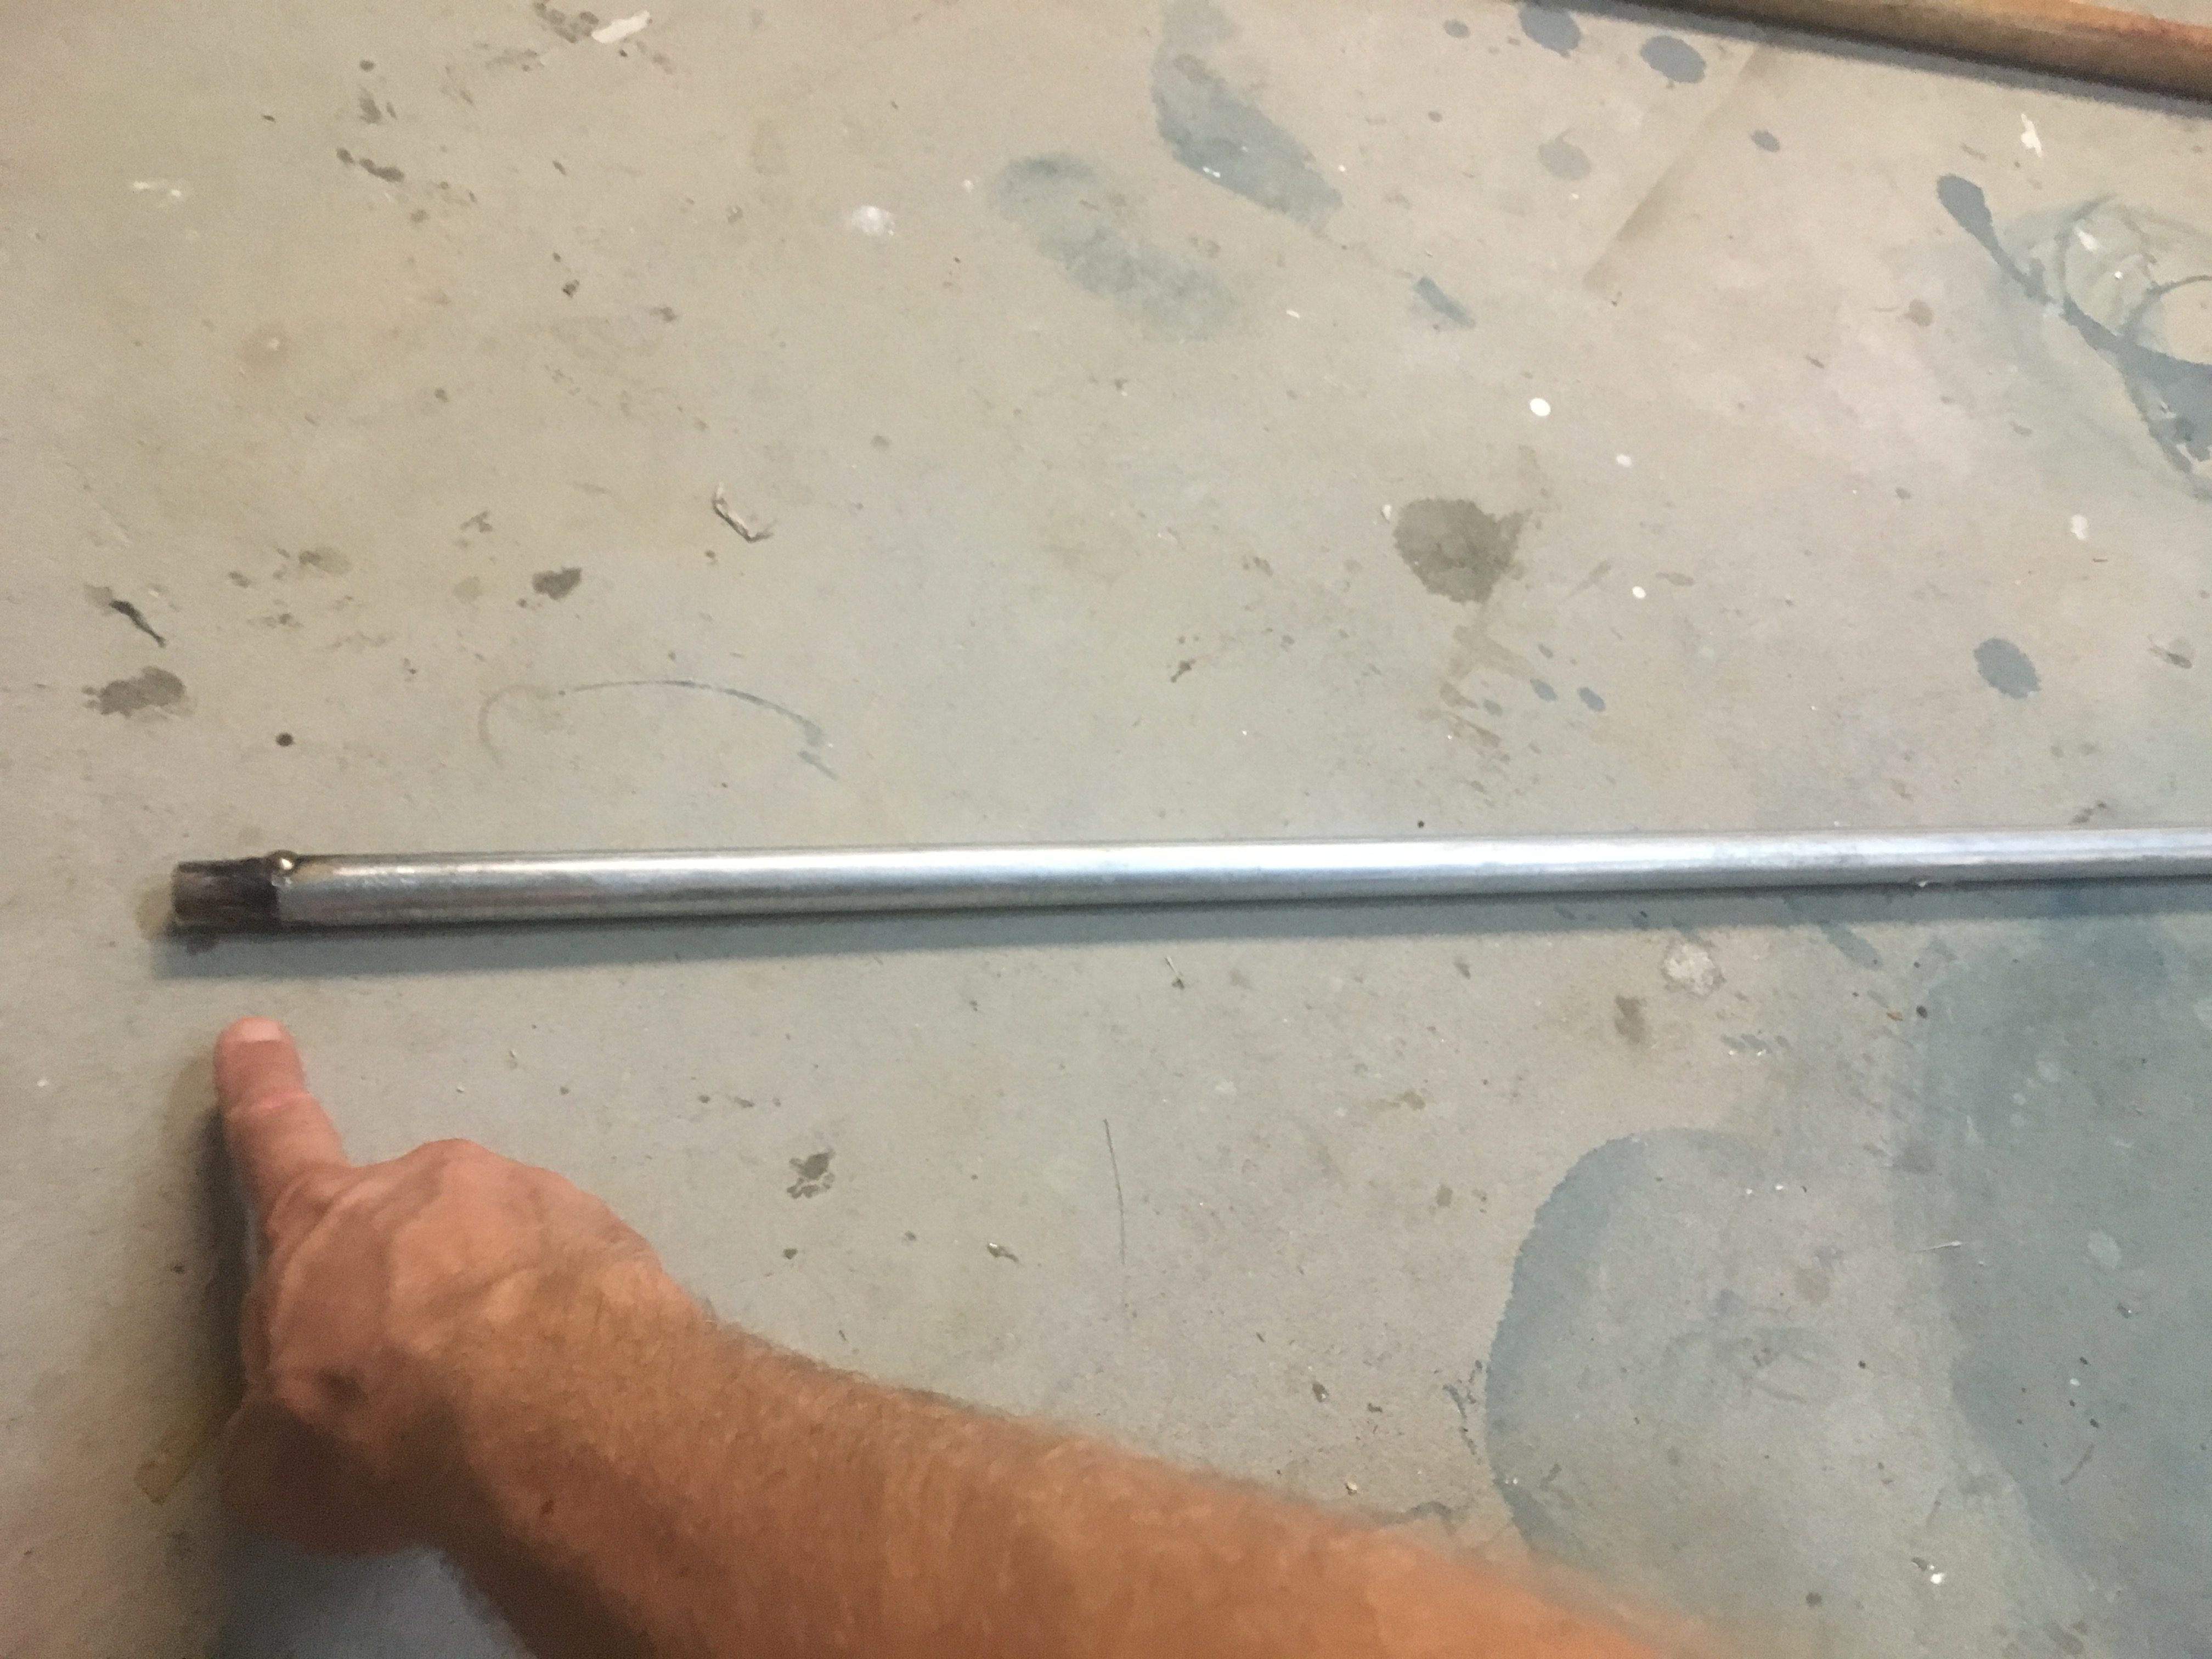 Hollow steel rod with socket welded.